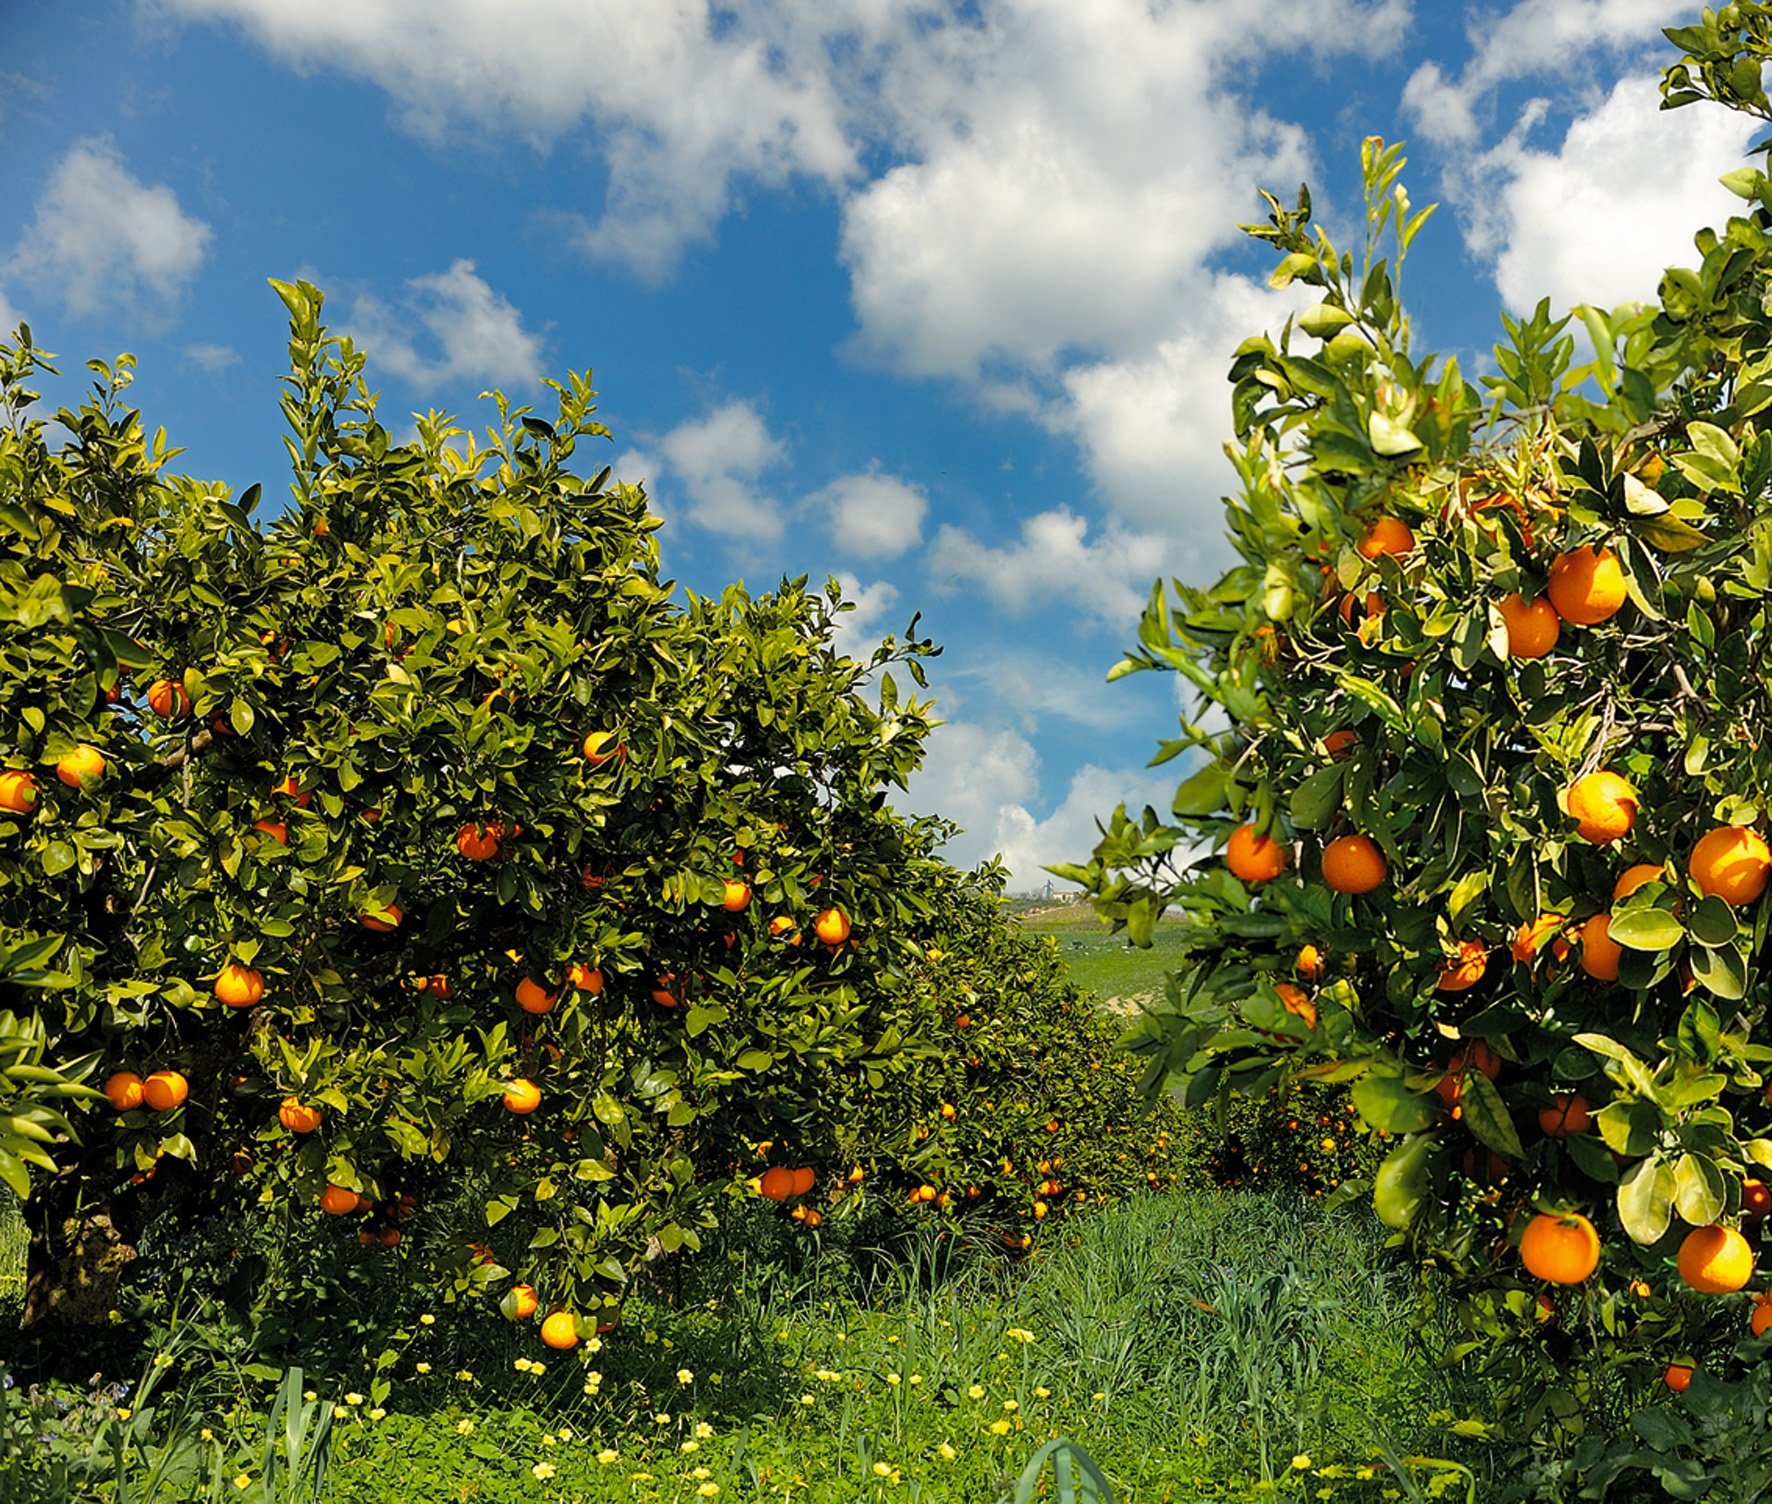  Arance di Rosarno, Coldiretti: “lo sfruttamento inizia dalle arance a 7 centesimi a kg”